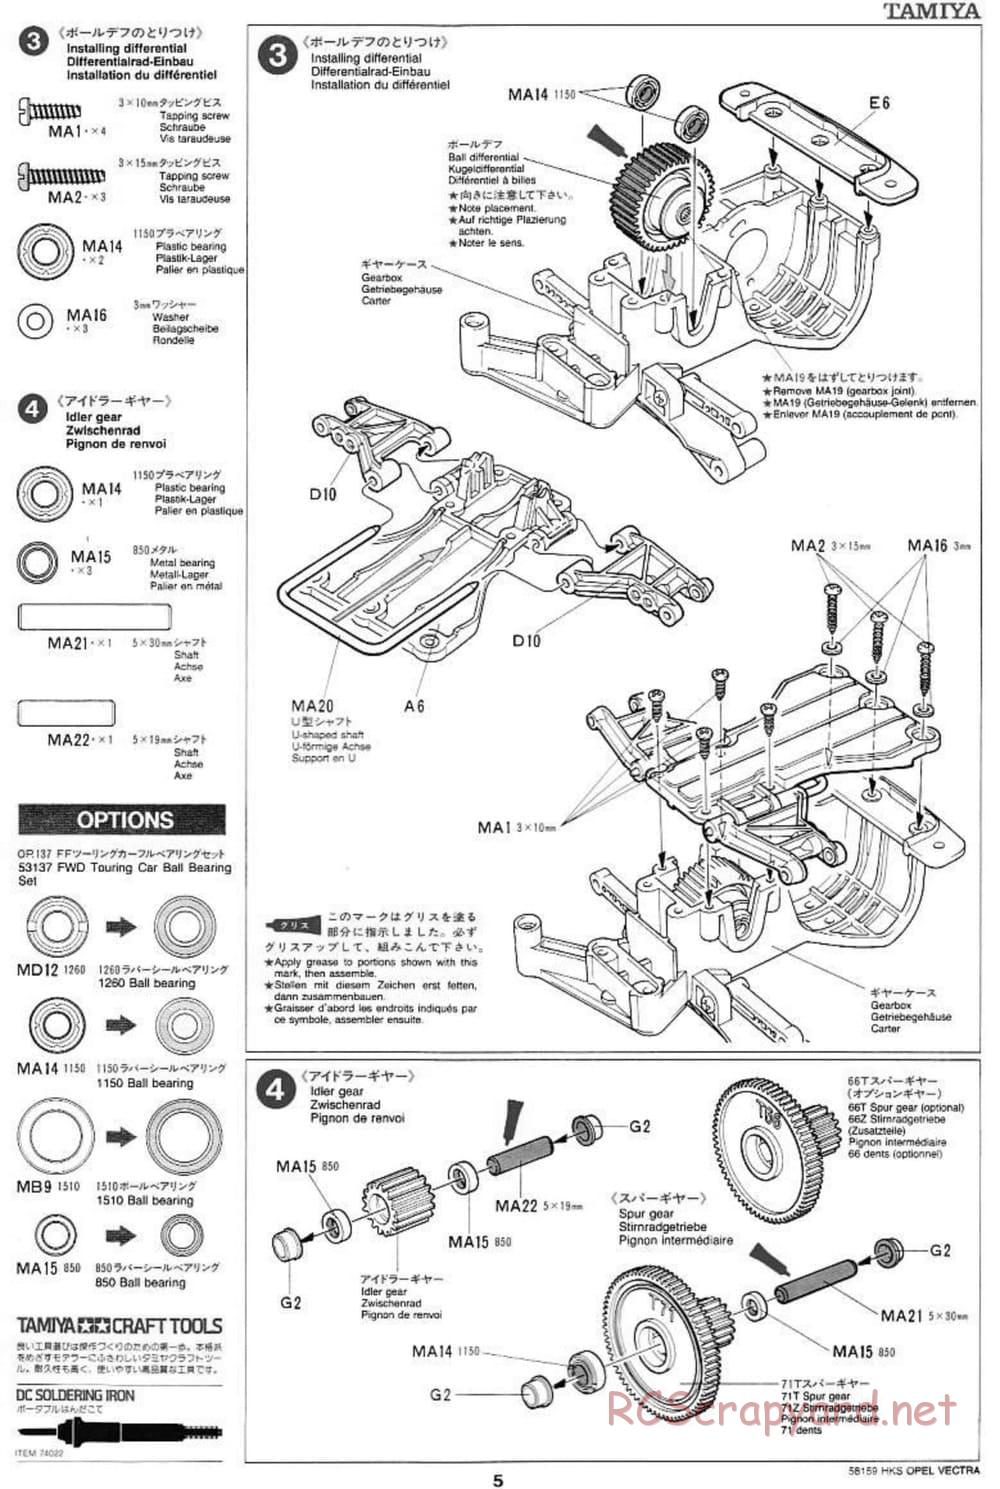 Tamiya - HKS Opel Vectra JTCC - FF-01 Chassis - Manual - Page 5